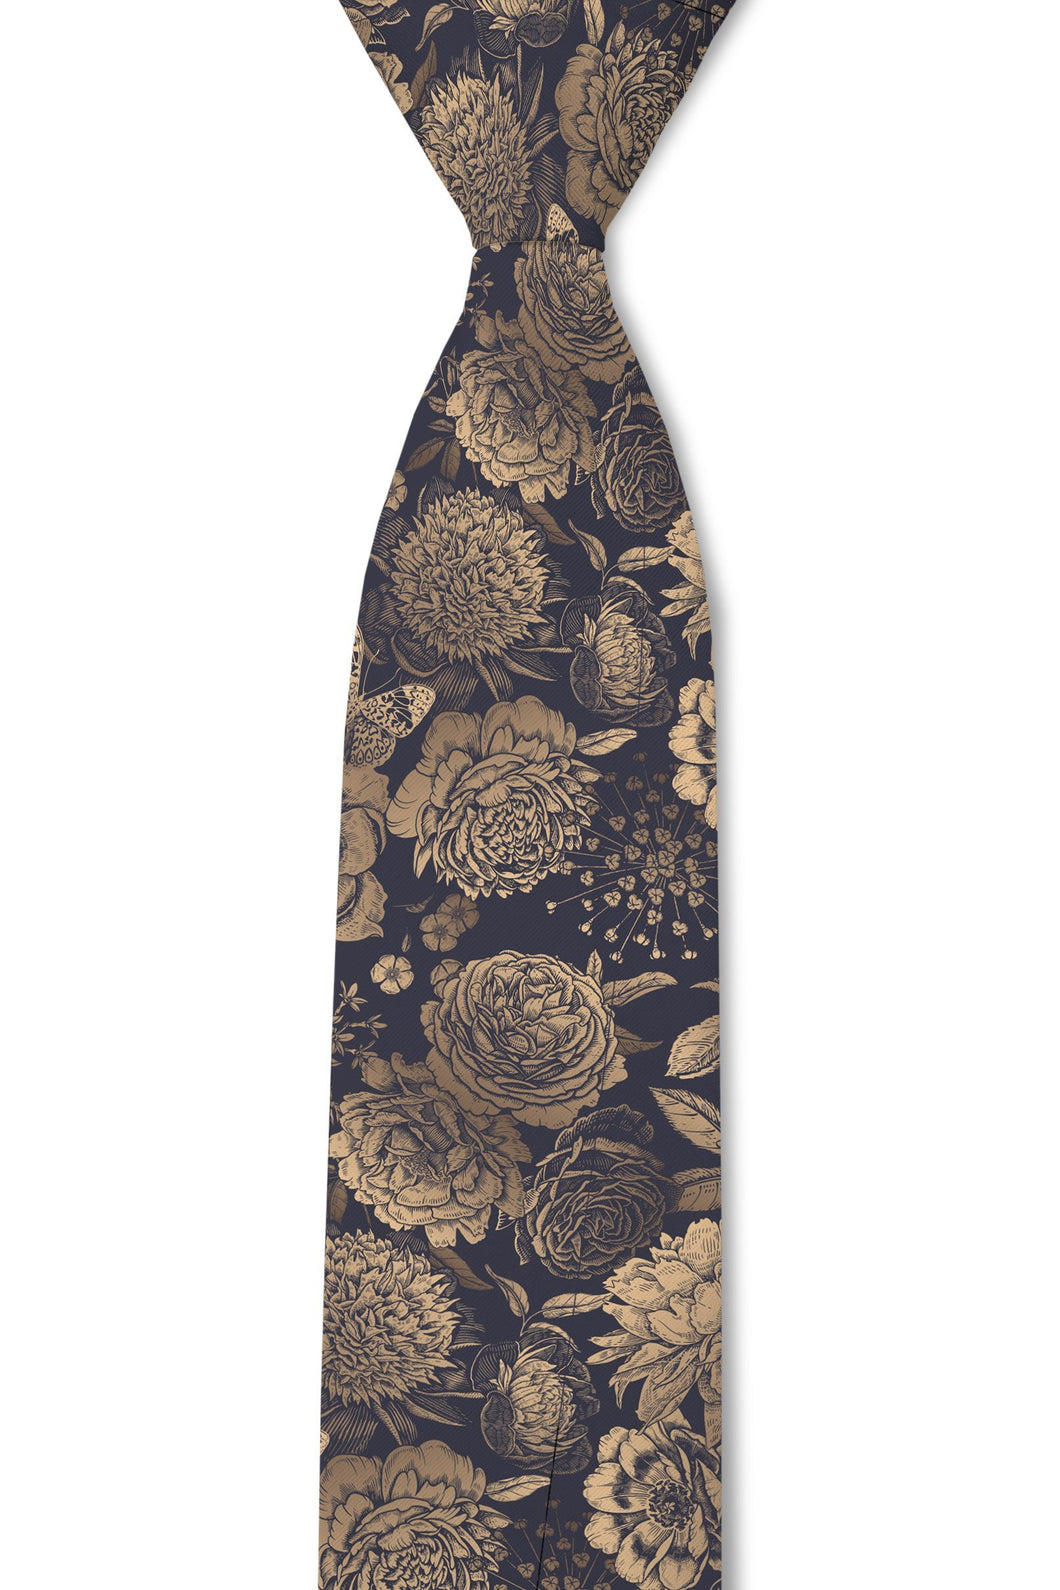 Vintage missionary tie